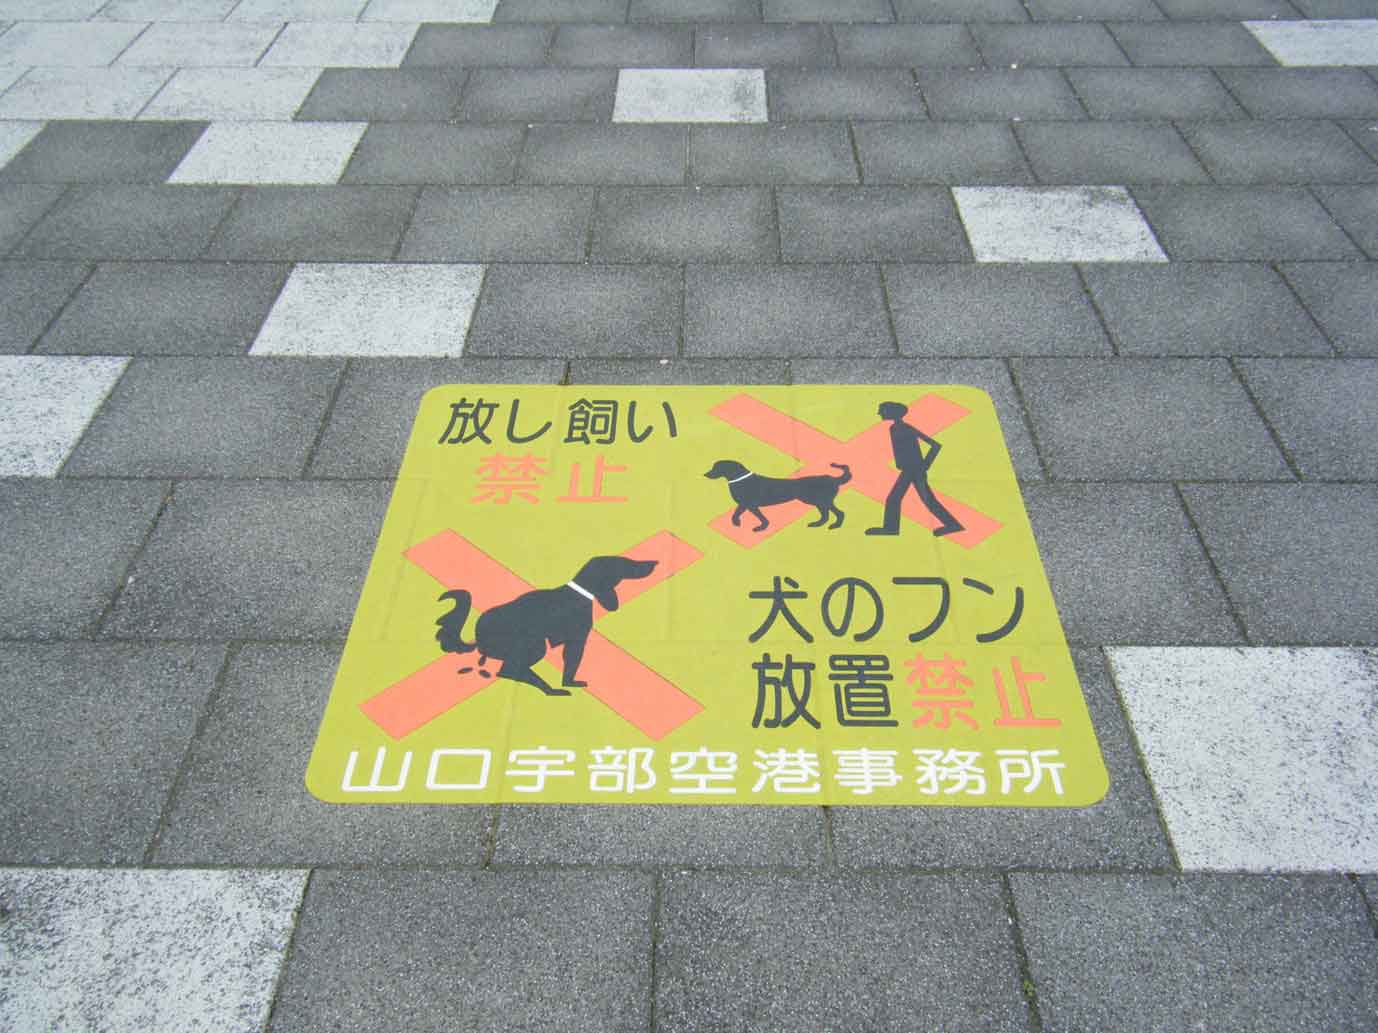 犬のフン放置禁止